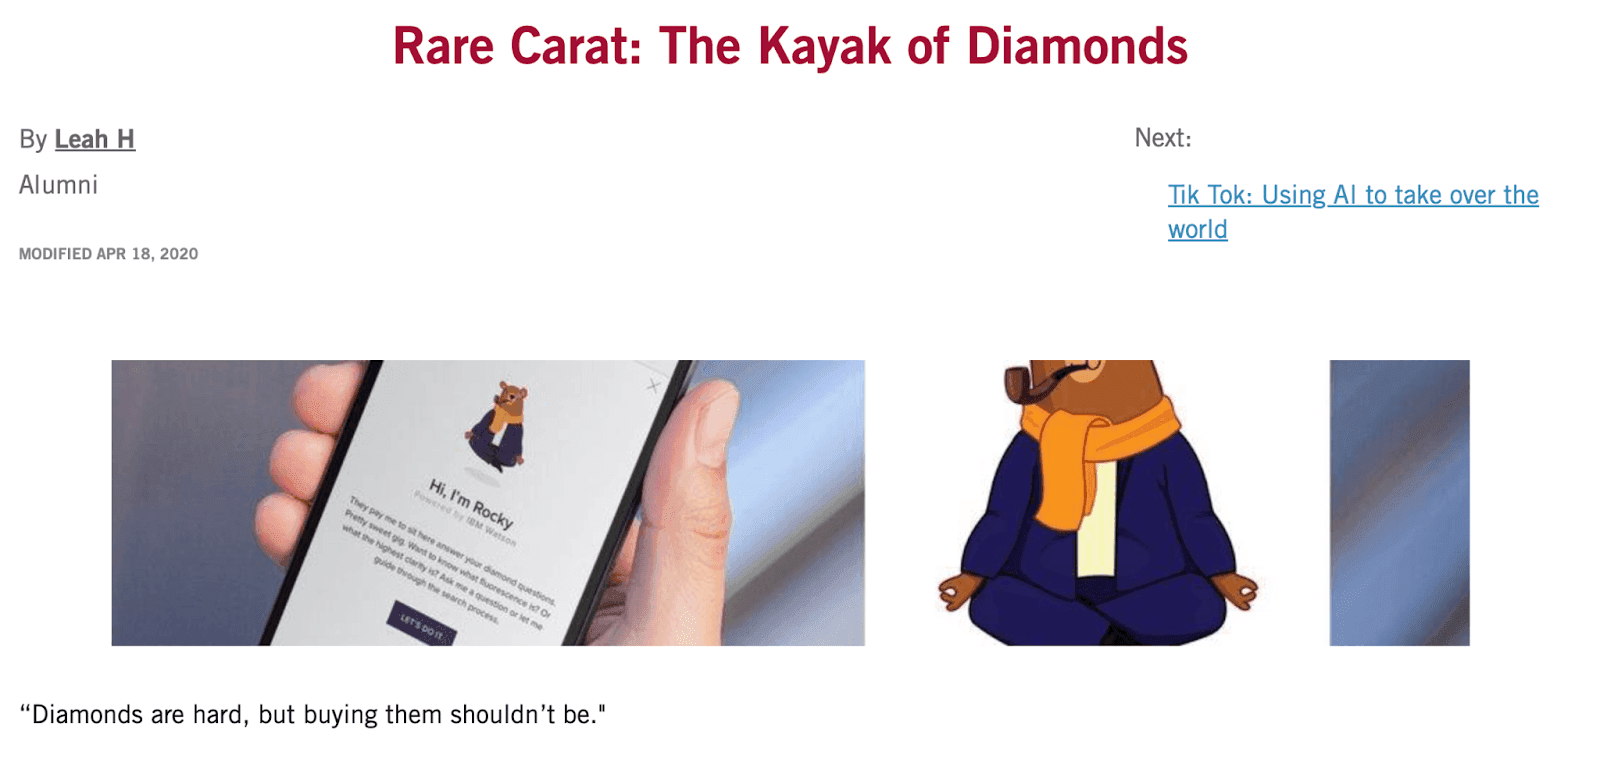 Rare Carat: The Kayak of Diamonds